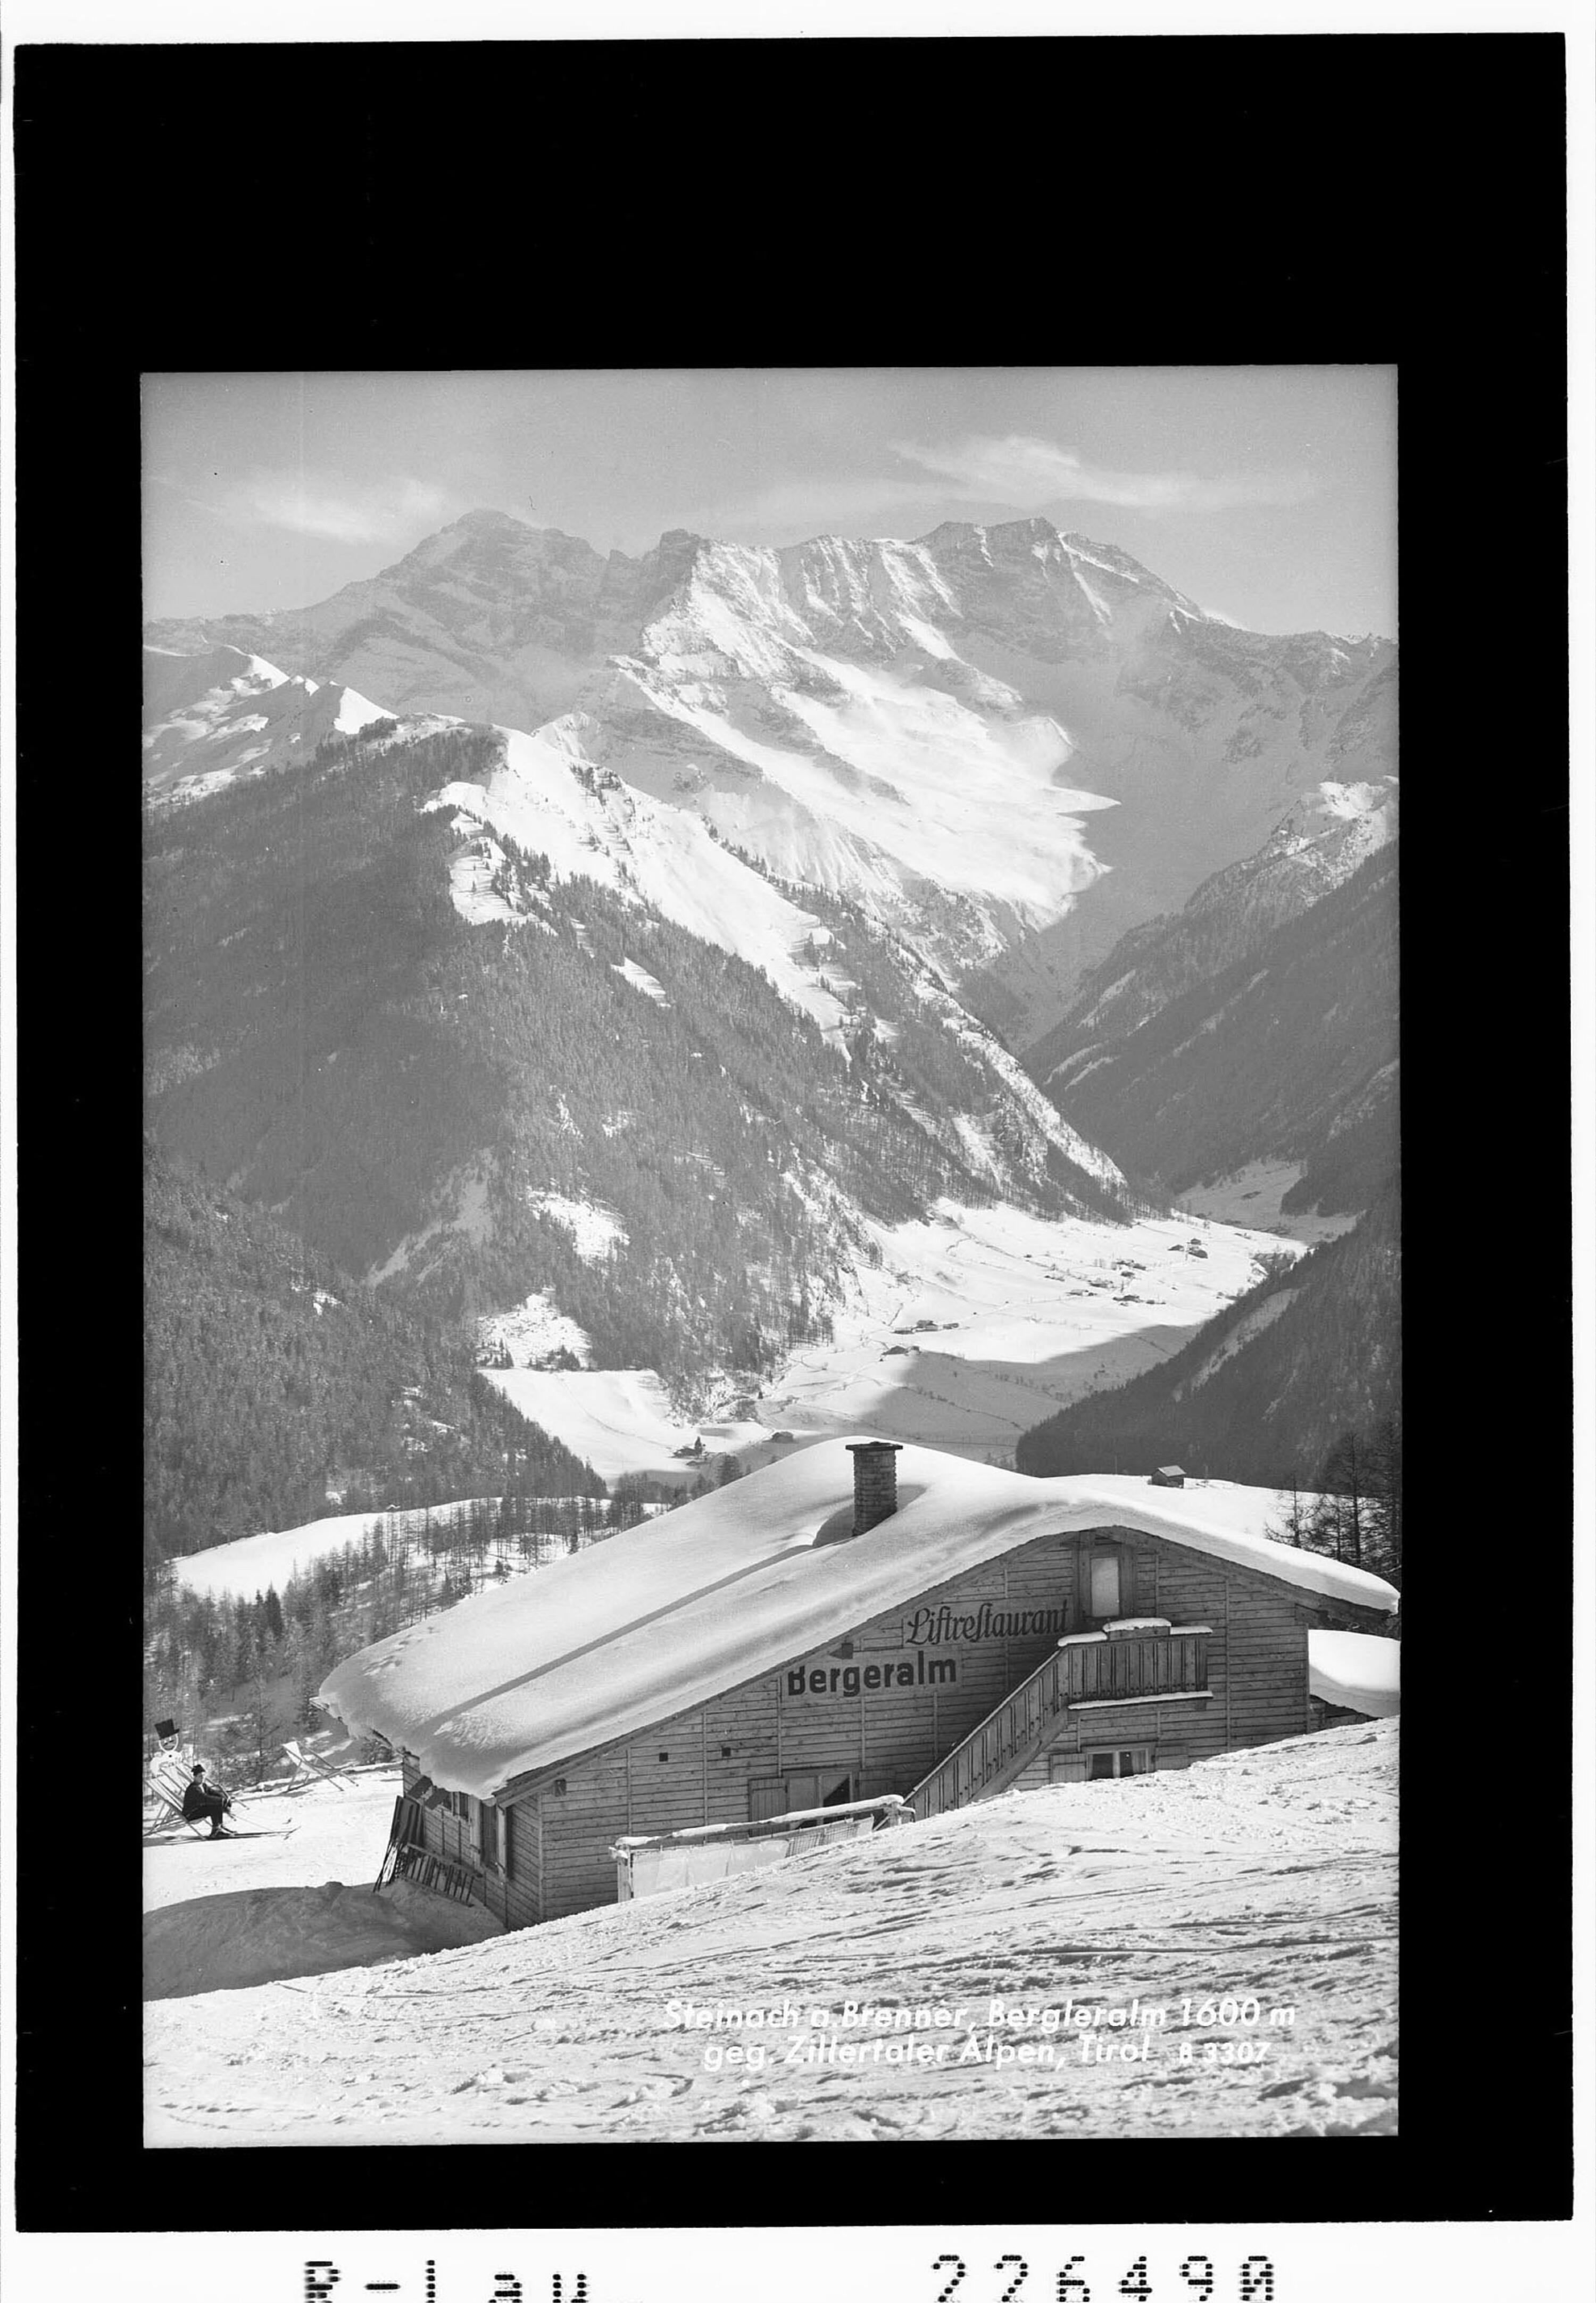 Steinach am Brenner / Bergeralm 1600 m gegen Zillertaler Alpen / Tirol></div>


    <hr>
    <div class=